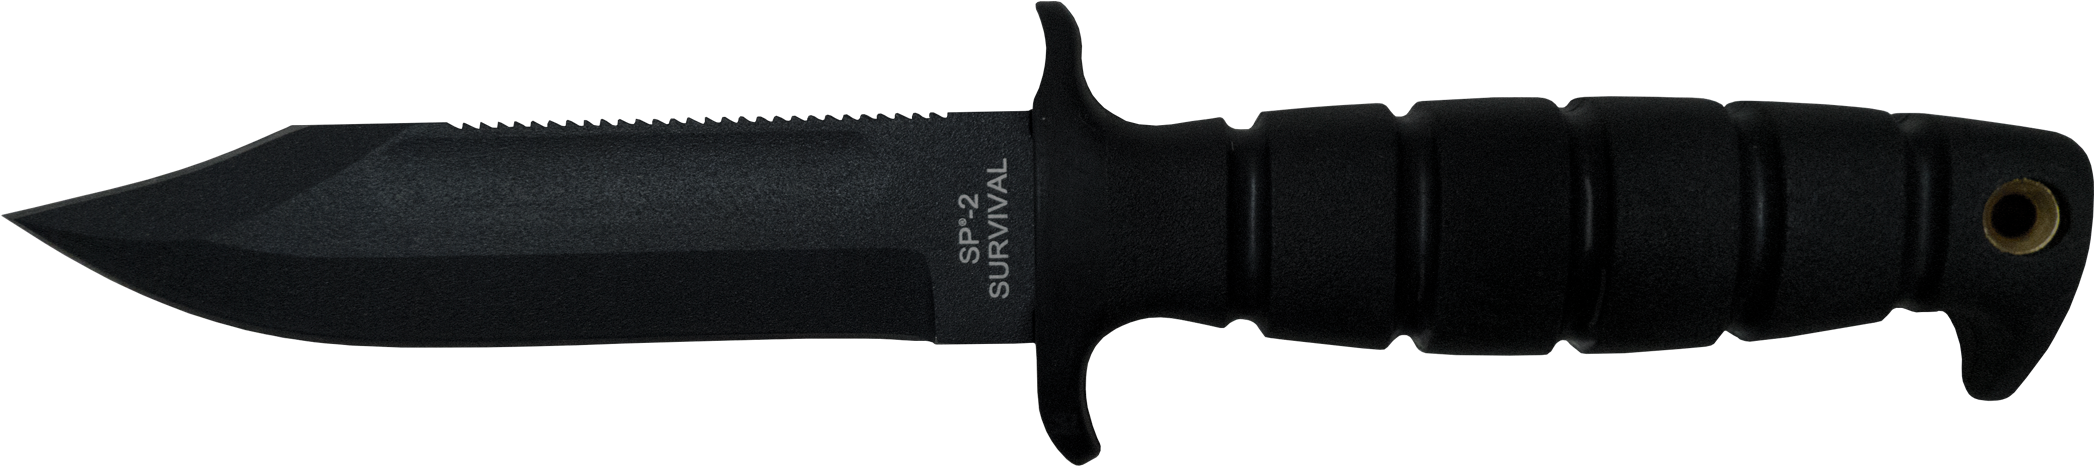 Sp-2 Survival Knife - Combat Knife Transparent Png (2144x559), Png Download